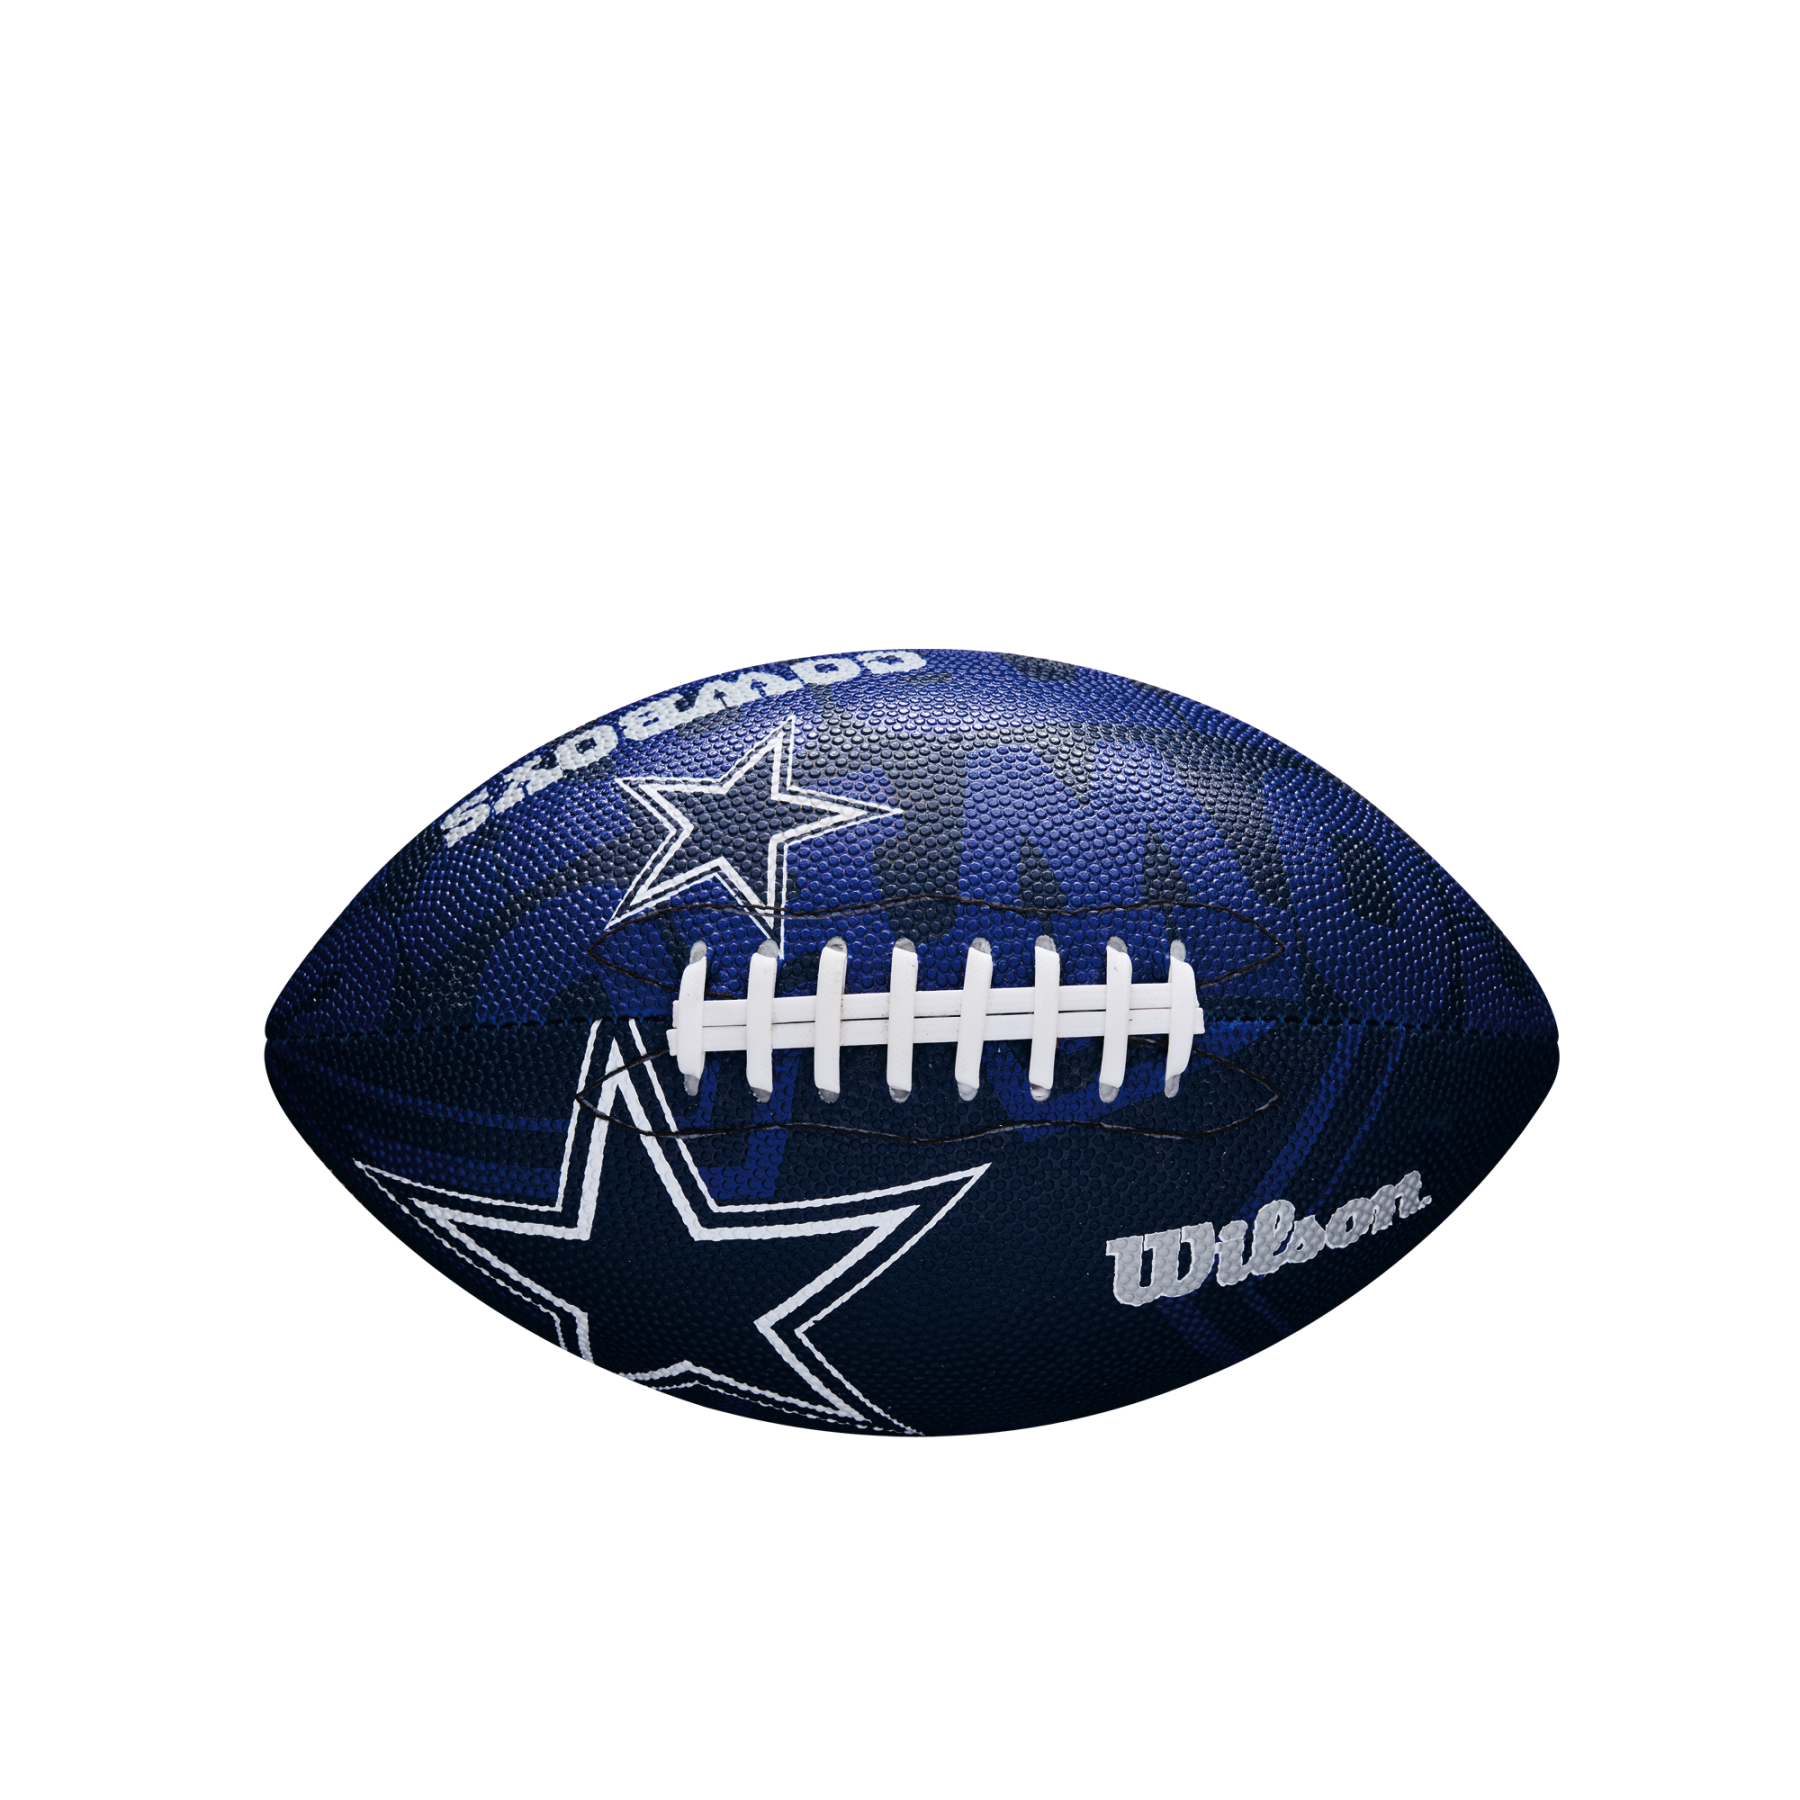 Ballon enfant Wilson Cowboys NFL Logo